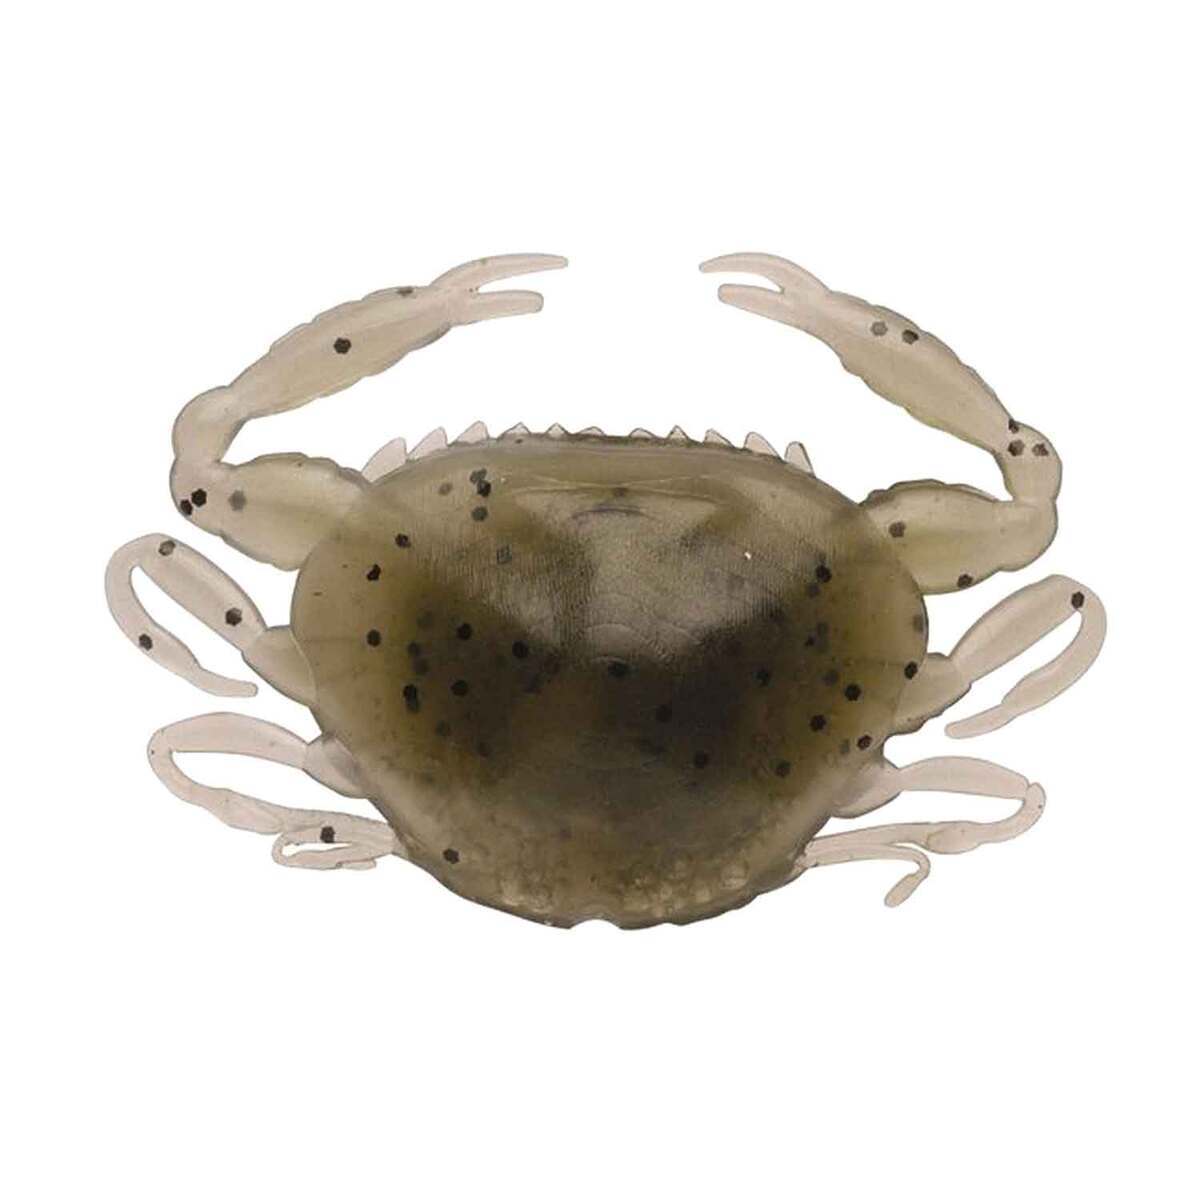 https://www.sportsmans.com/medias/berkley-gulp-peeler-crab-saltwater-soft-bait-natural-peeler-1in-8pk-1118984-1.jpg?context=bWFzdGVyfGltYWdlc3w0ODgwMXxpbWFnZS9qcGVnfGFEYzFMMmczWlM4eE1EVXlNREEwT0RJd05UZzFOQzh4TVRFNE9UZzBMVEZmWW1GelpTMWpiMjUyWlhKemFXOXVSbTl5YldGMFh6RXlNREF0WTI5dWRtVnljMmx2YmtadmNtMWhkQXxlOTIyNDE4NTU2ZDQ4ZDZlNTliNDc3NjAzNGU4OTc2ZWEwNjZmM2NmNTZjNzE5MzE1MmMyN2VkZmJjM2VjNmE4